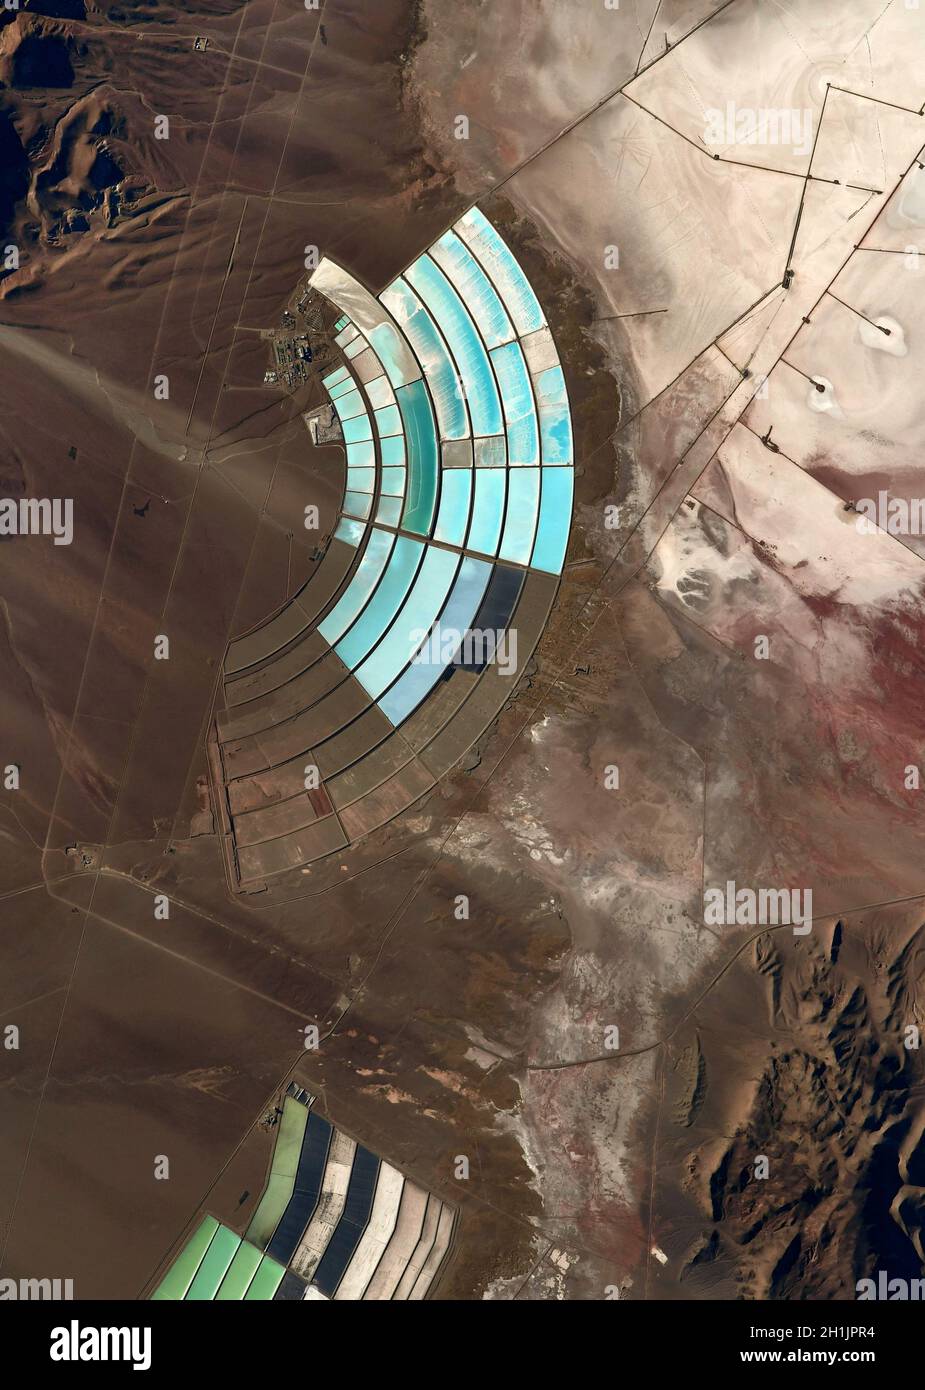 Ein Blick auf die Erde von der Internationalen Raumstation: Mineralreservoirs, die Anden Peru/Bolivien. Eine optimierte und digital verbesserte Version eines NASA/ESA-Bildes. Obligatorische Gutschrift: NASA/ESA/T. Pesquet. Hinweis: Nutzungseinschränkungen: Nicht als Billigung zu präsentieren. Stockfoto